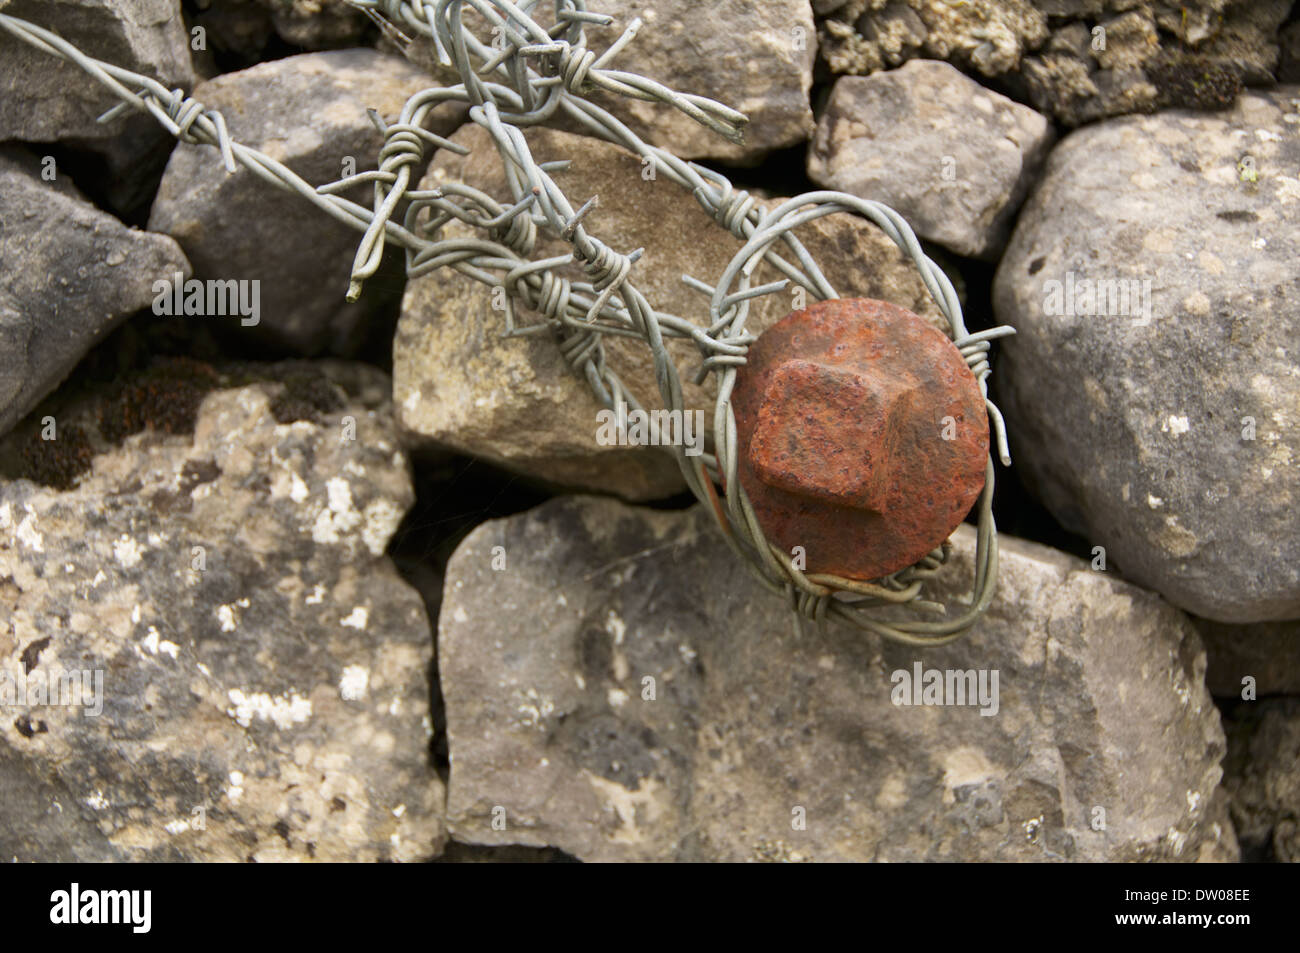 Rusty spike avec du fil de fer barbelé attaché autour dans un mur de pierre. Banque D'Images